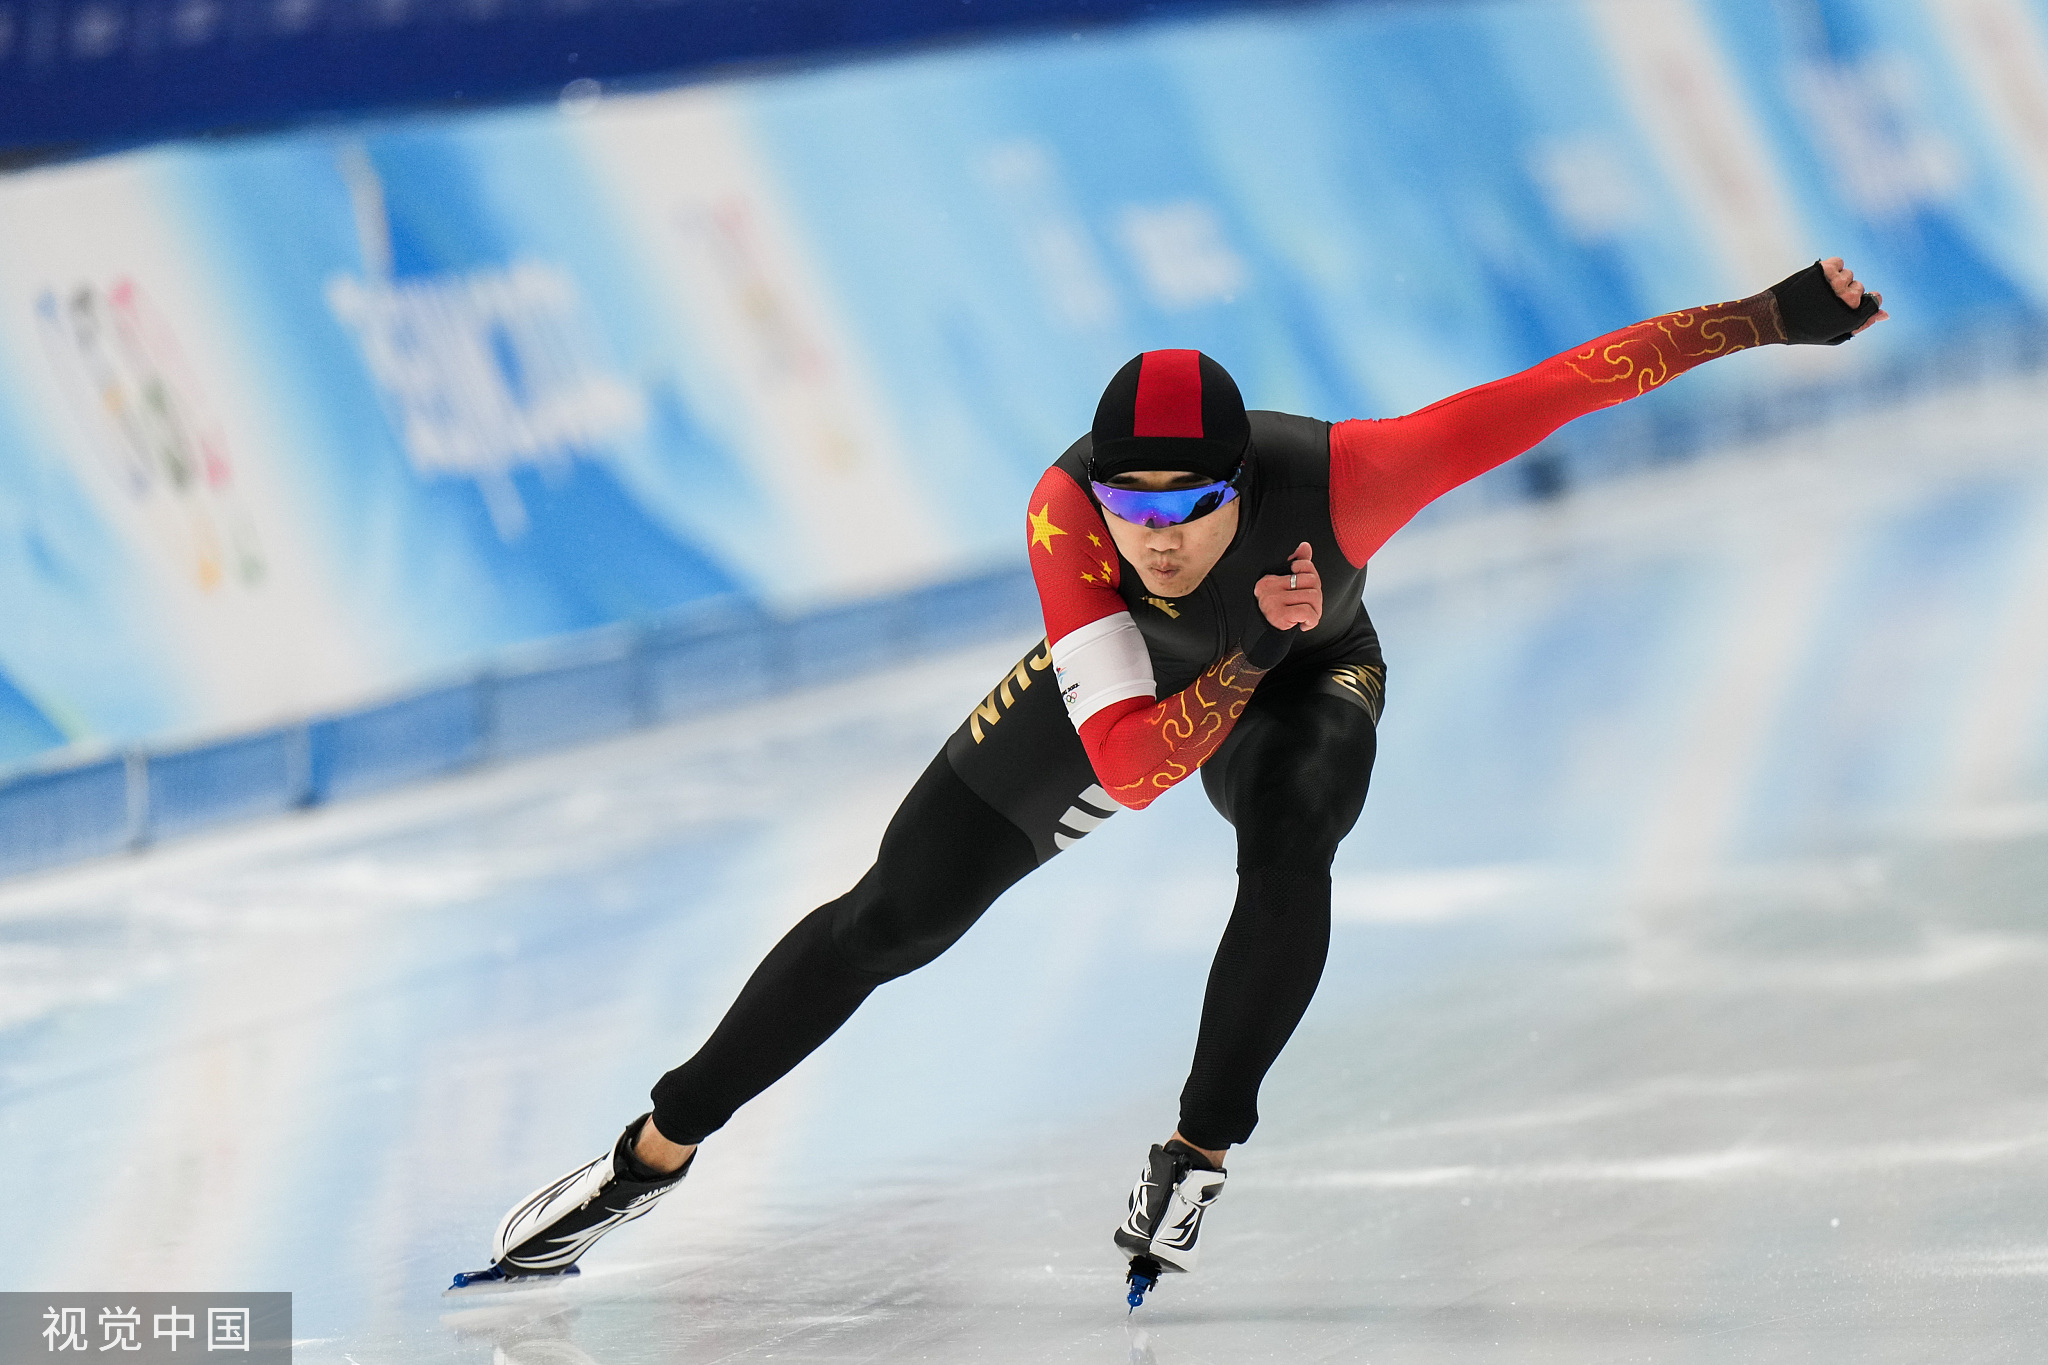 高亭宇就在男子500米比赛中摘铜,实现了中国速度滑冰男子项目在奥运会